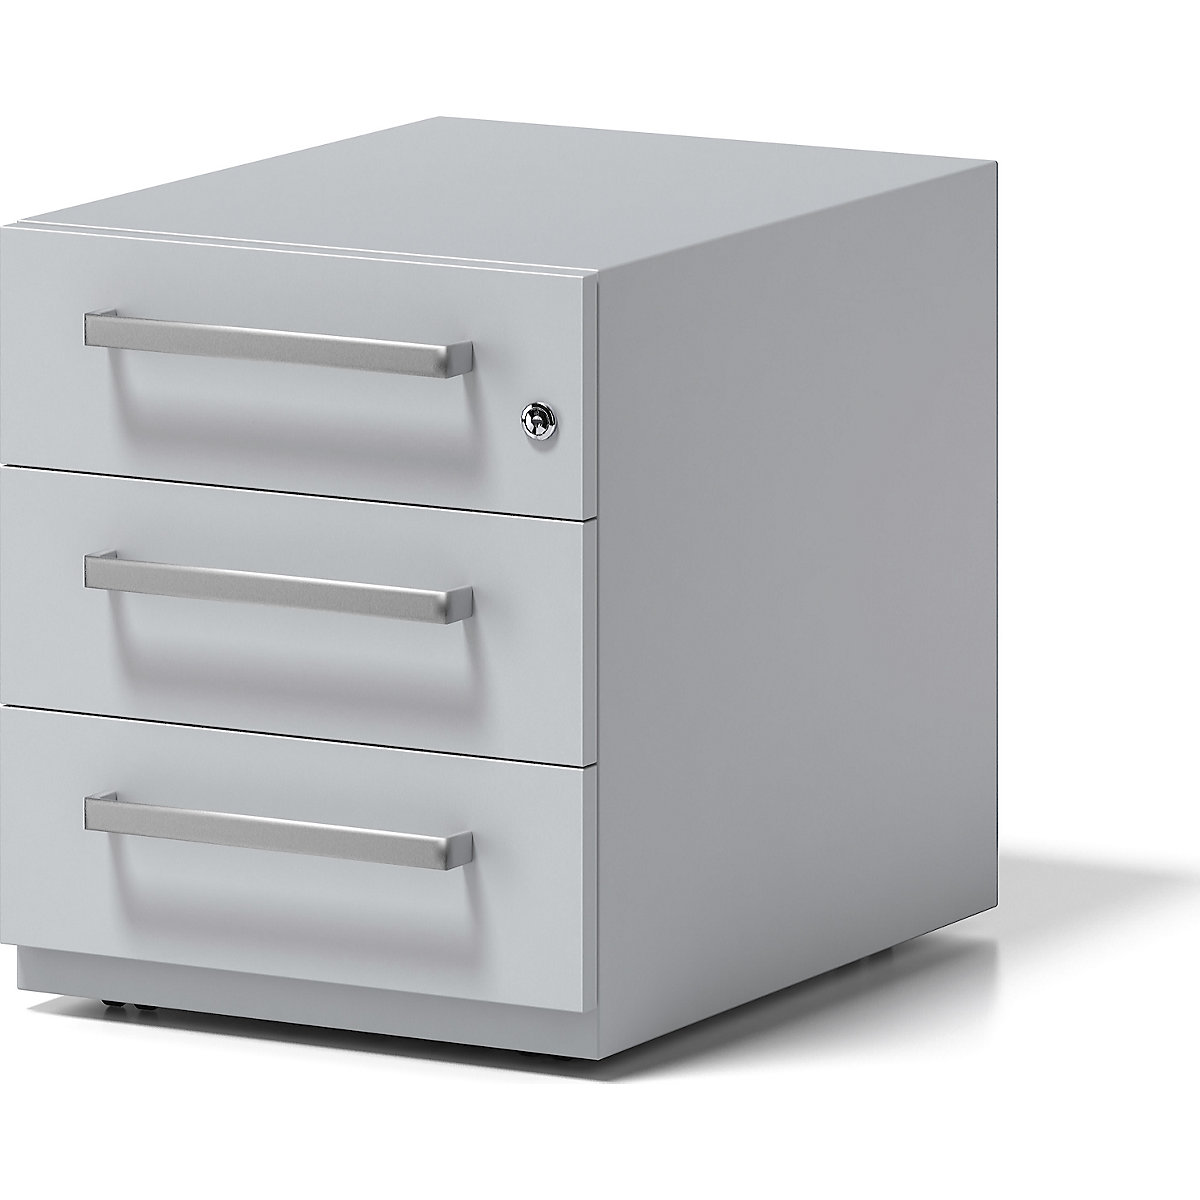 Pojazdný kontajner Note™, s 3 univerzálnymi zásuvkami – BISLEY, v x š x h 495 x 420 x 565 mm, s rukoväťou, svetlošedá-8